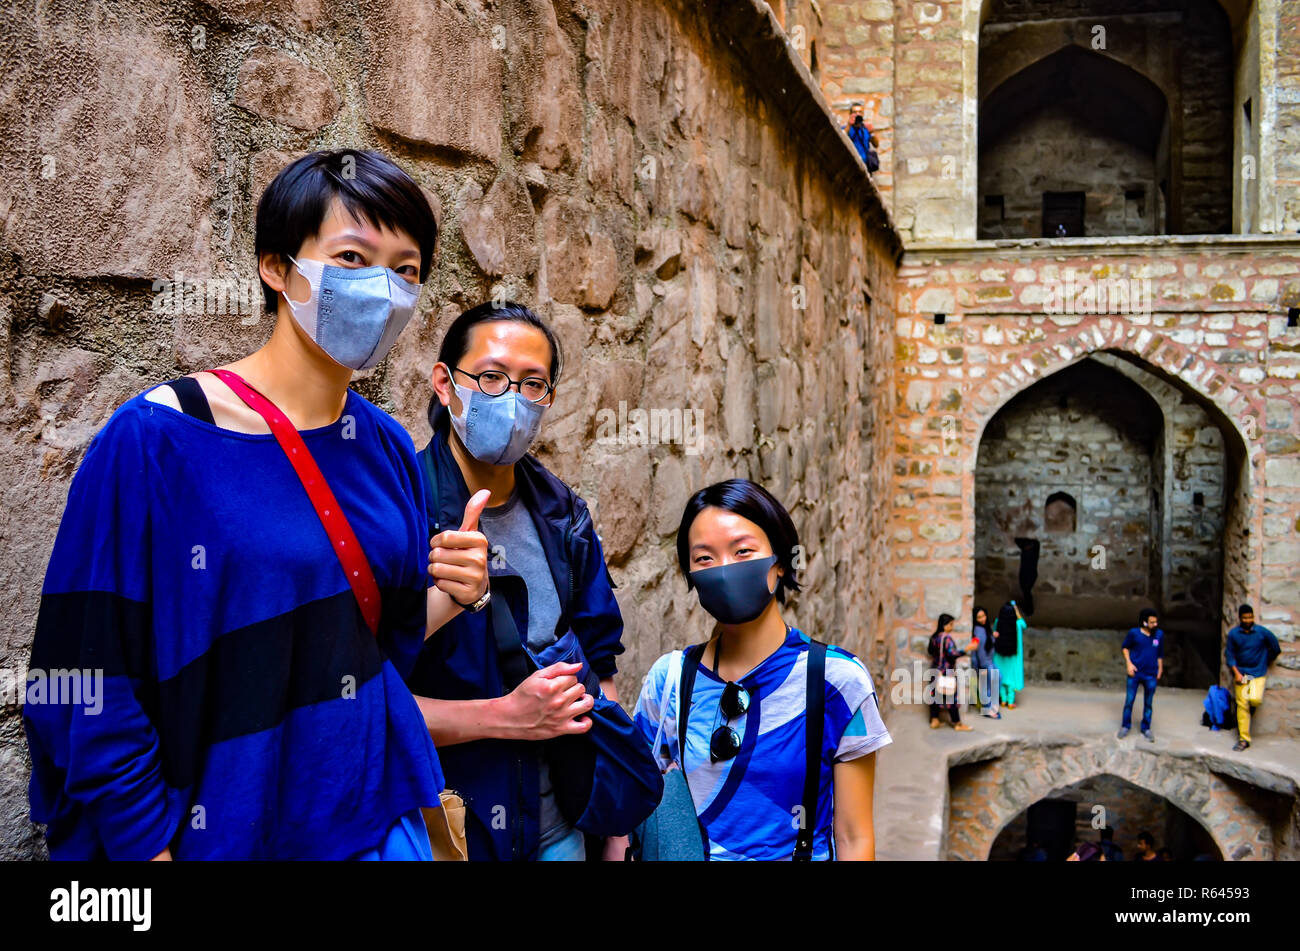 3 touristes asiatiques portant des masques se rendant sur Ugrasen ki Baoli, un monument du patrimoine mondial dans la région de Delhi, Inde, vers 2018. Banque D'Images